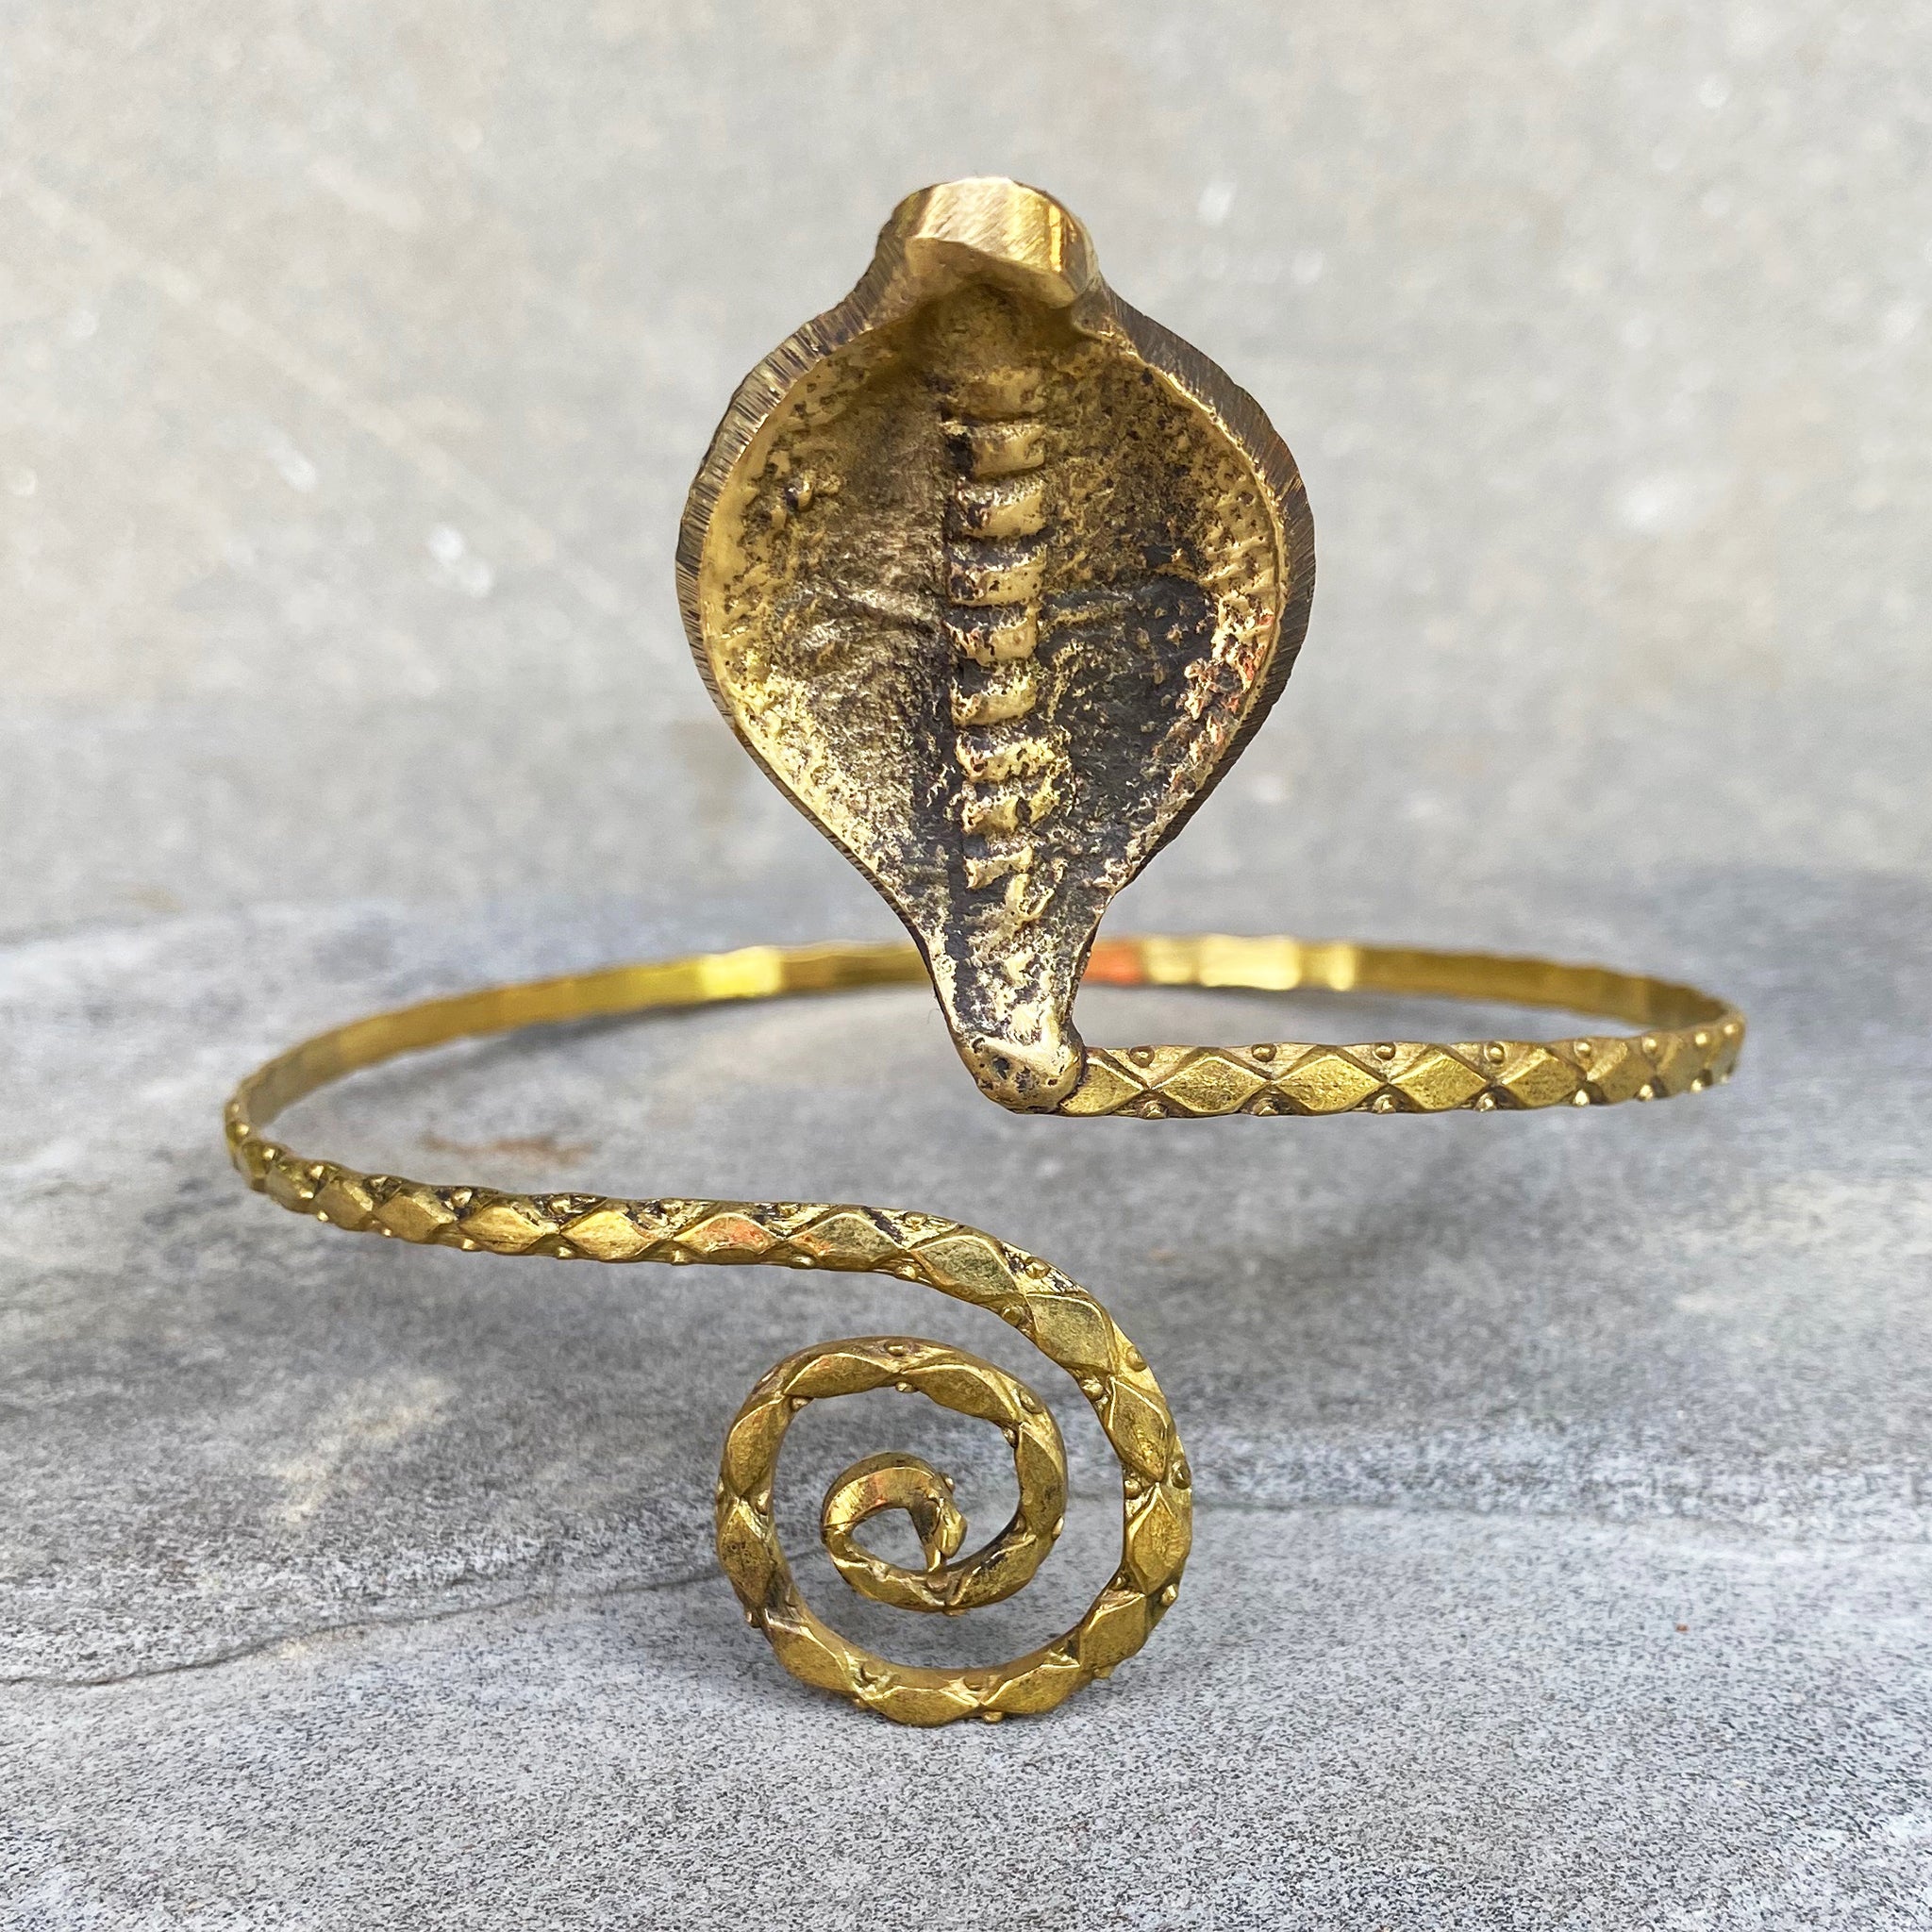 Mystic Cobra Gold Upper Arm Band Snake Bracelet at